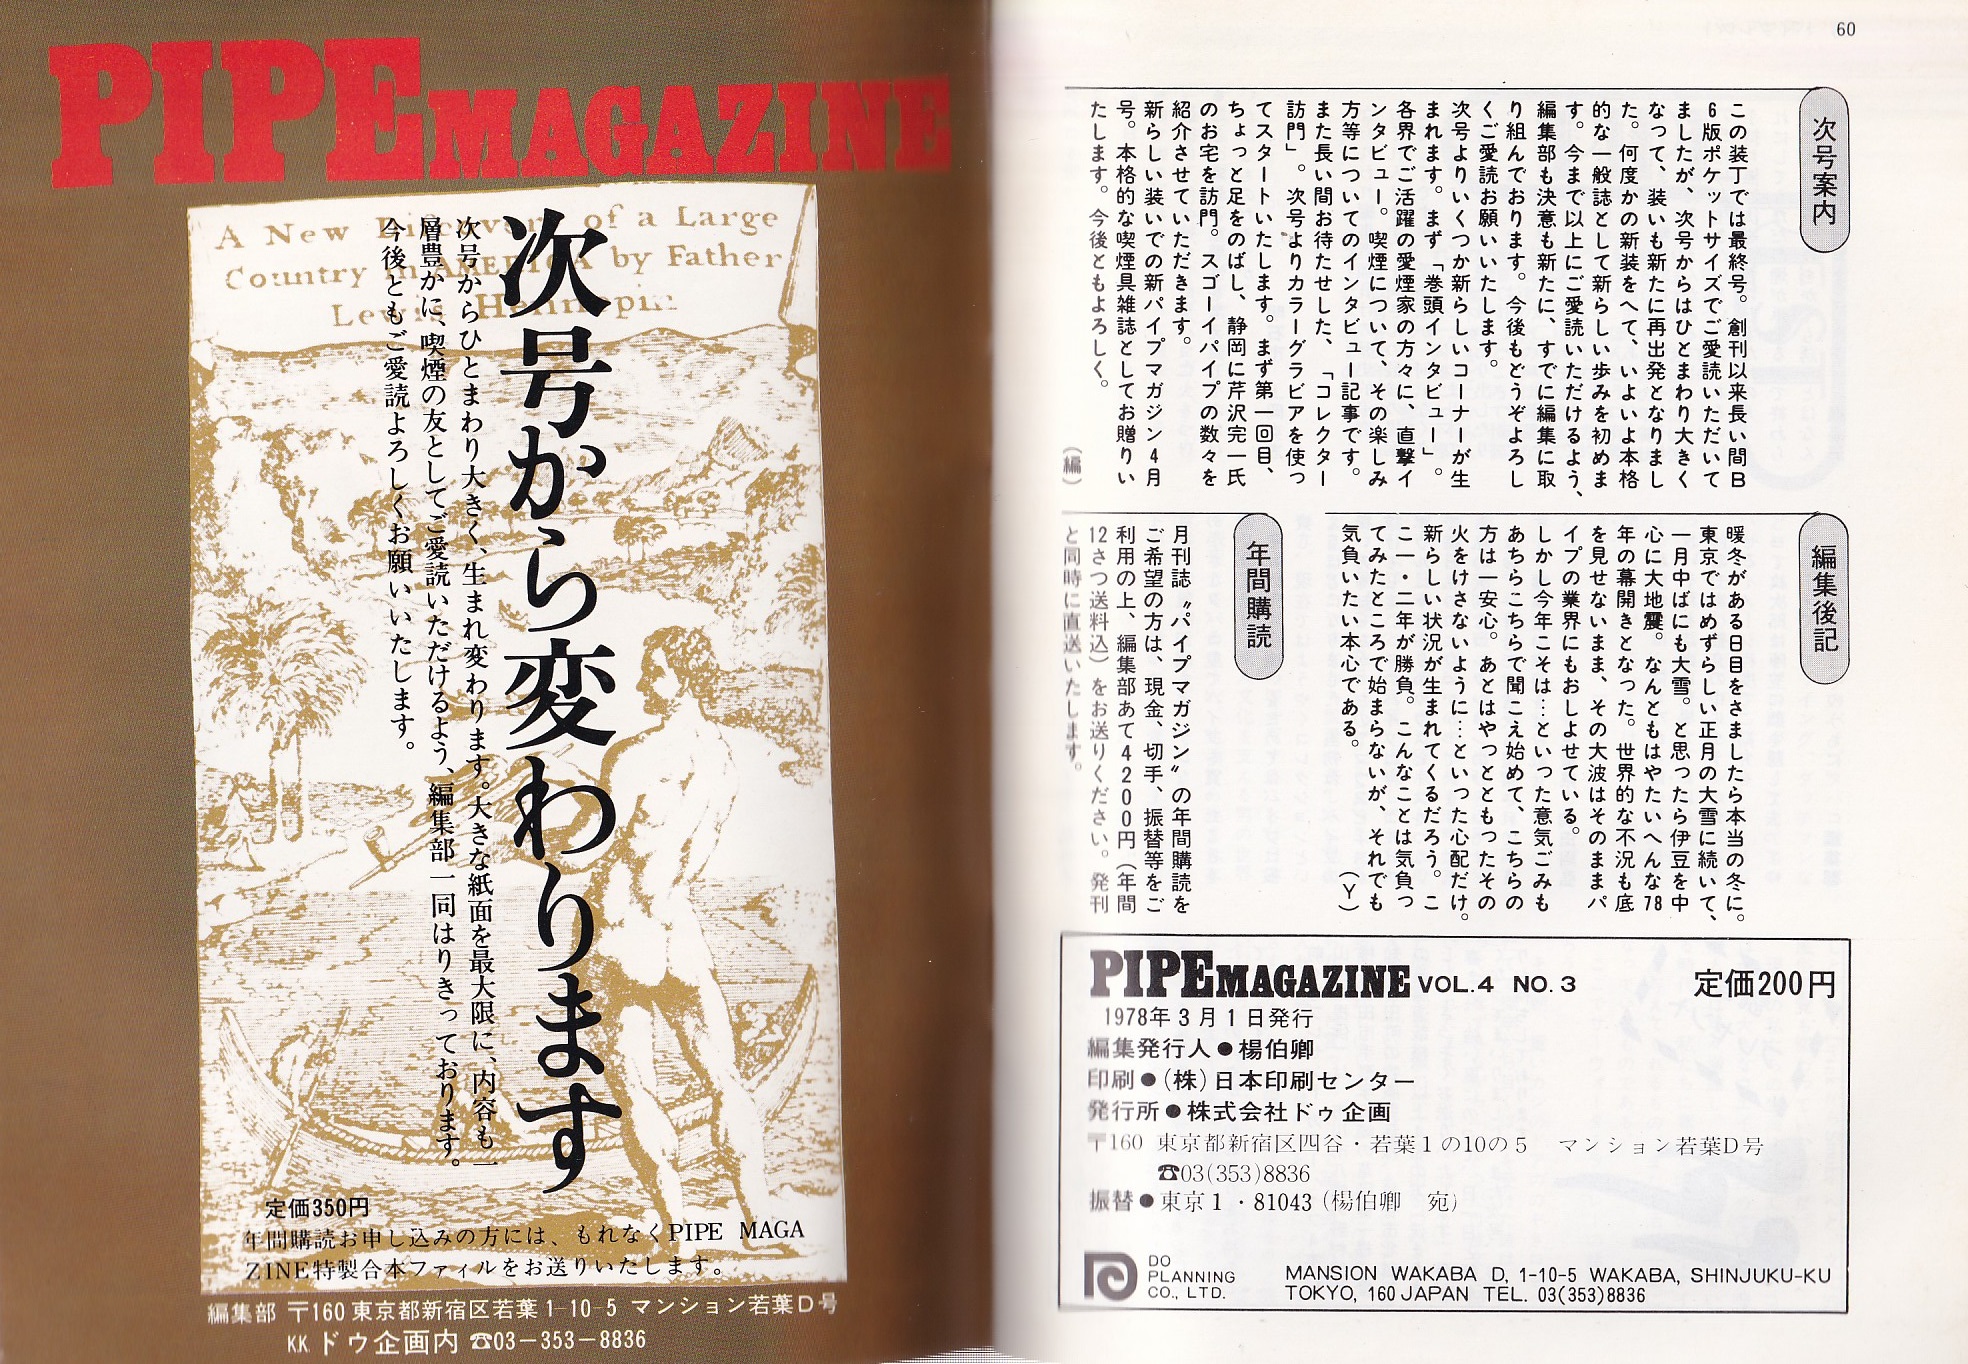 パイプ・マガジン 28号 昭和53年3月 -総合喫煙具雑誌-(〈徳富博之 ...